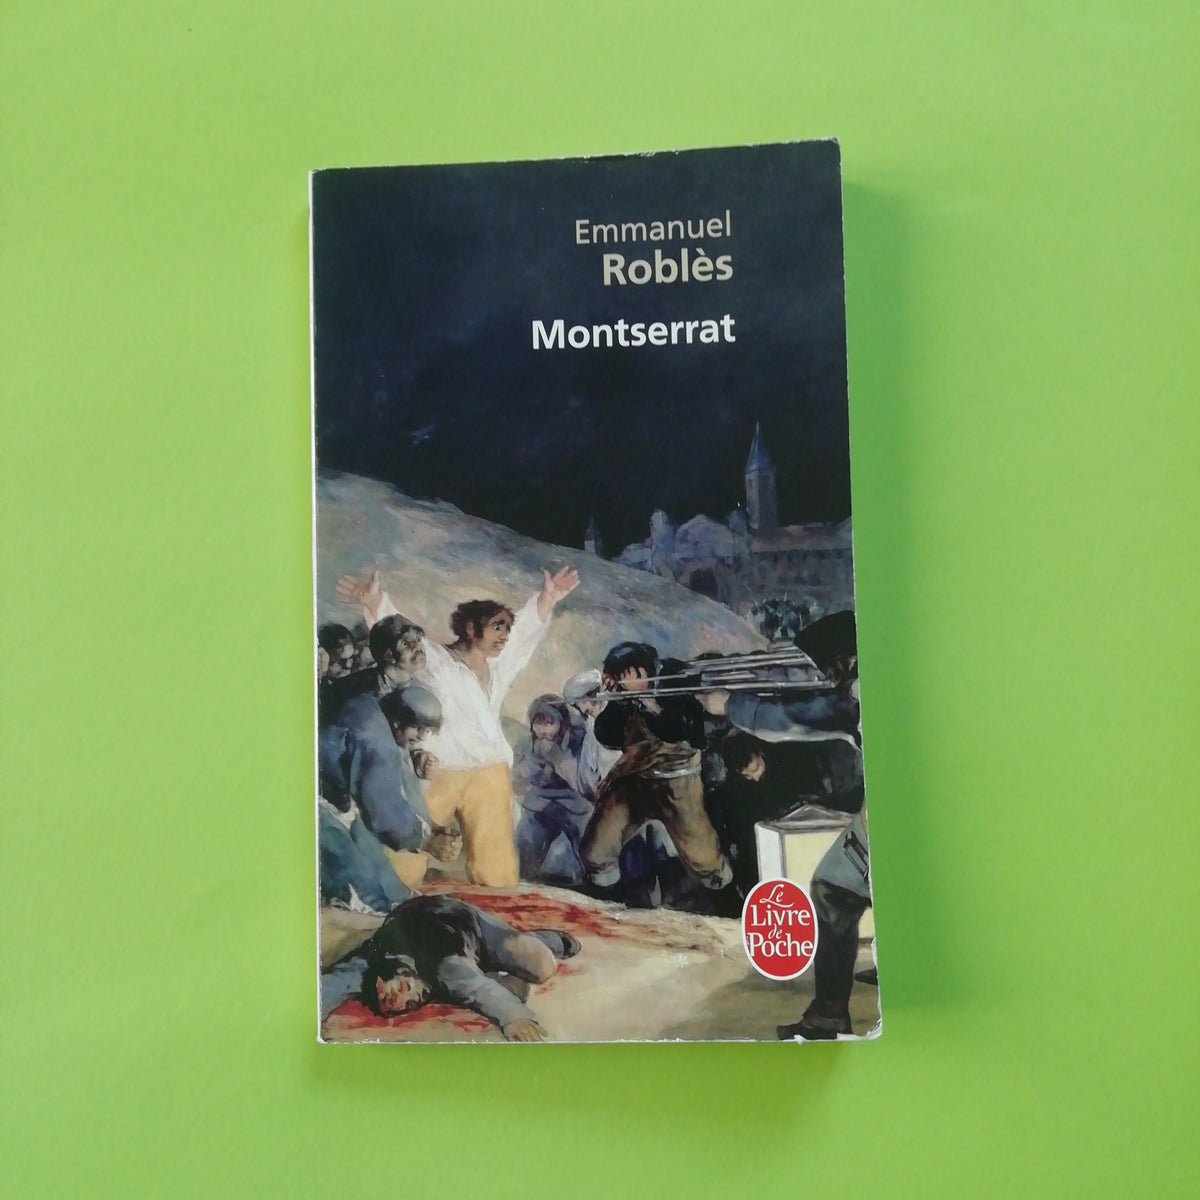 Montserrat (Le Livre de Poche) (French Edition) by Emmanuel Roblès